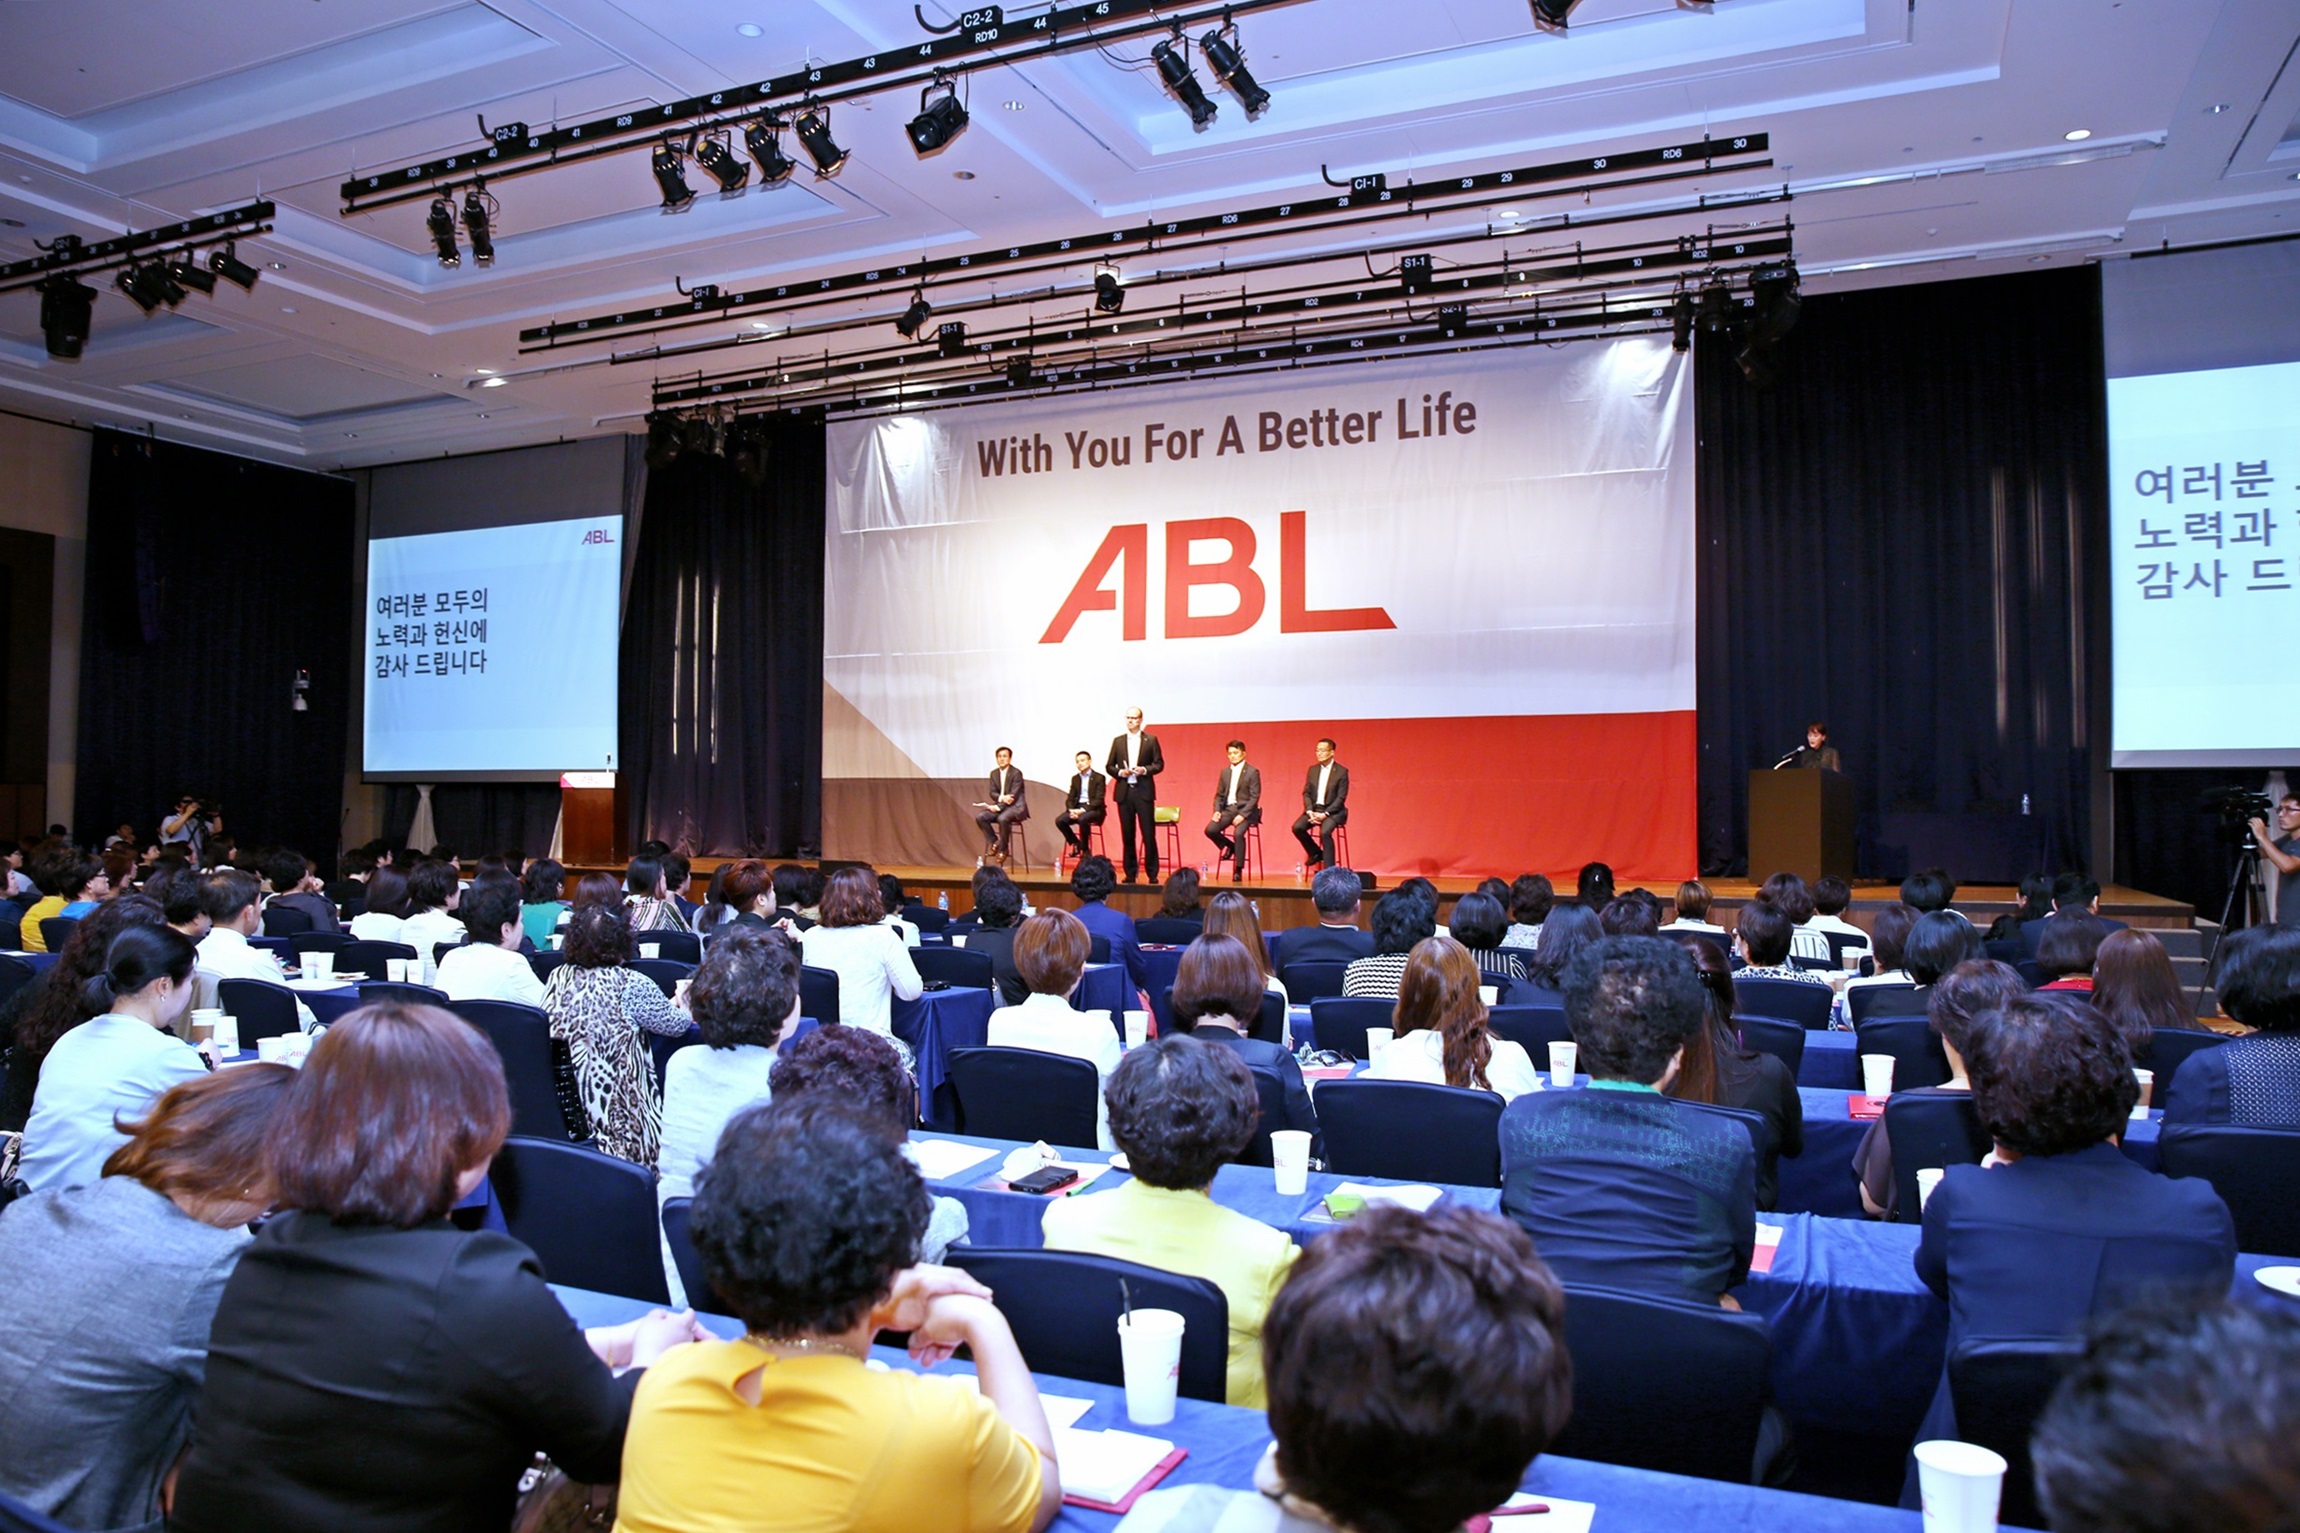 알리안츠생명, 전국 영업현장 돌며 새로운 브랜드 알리는 ‘ABL 영업현장 로드쇼’ 개최